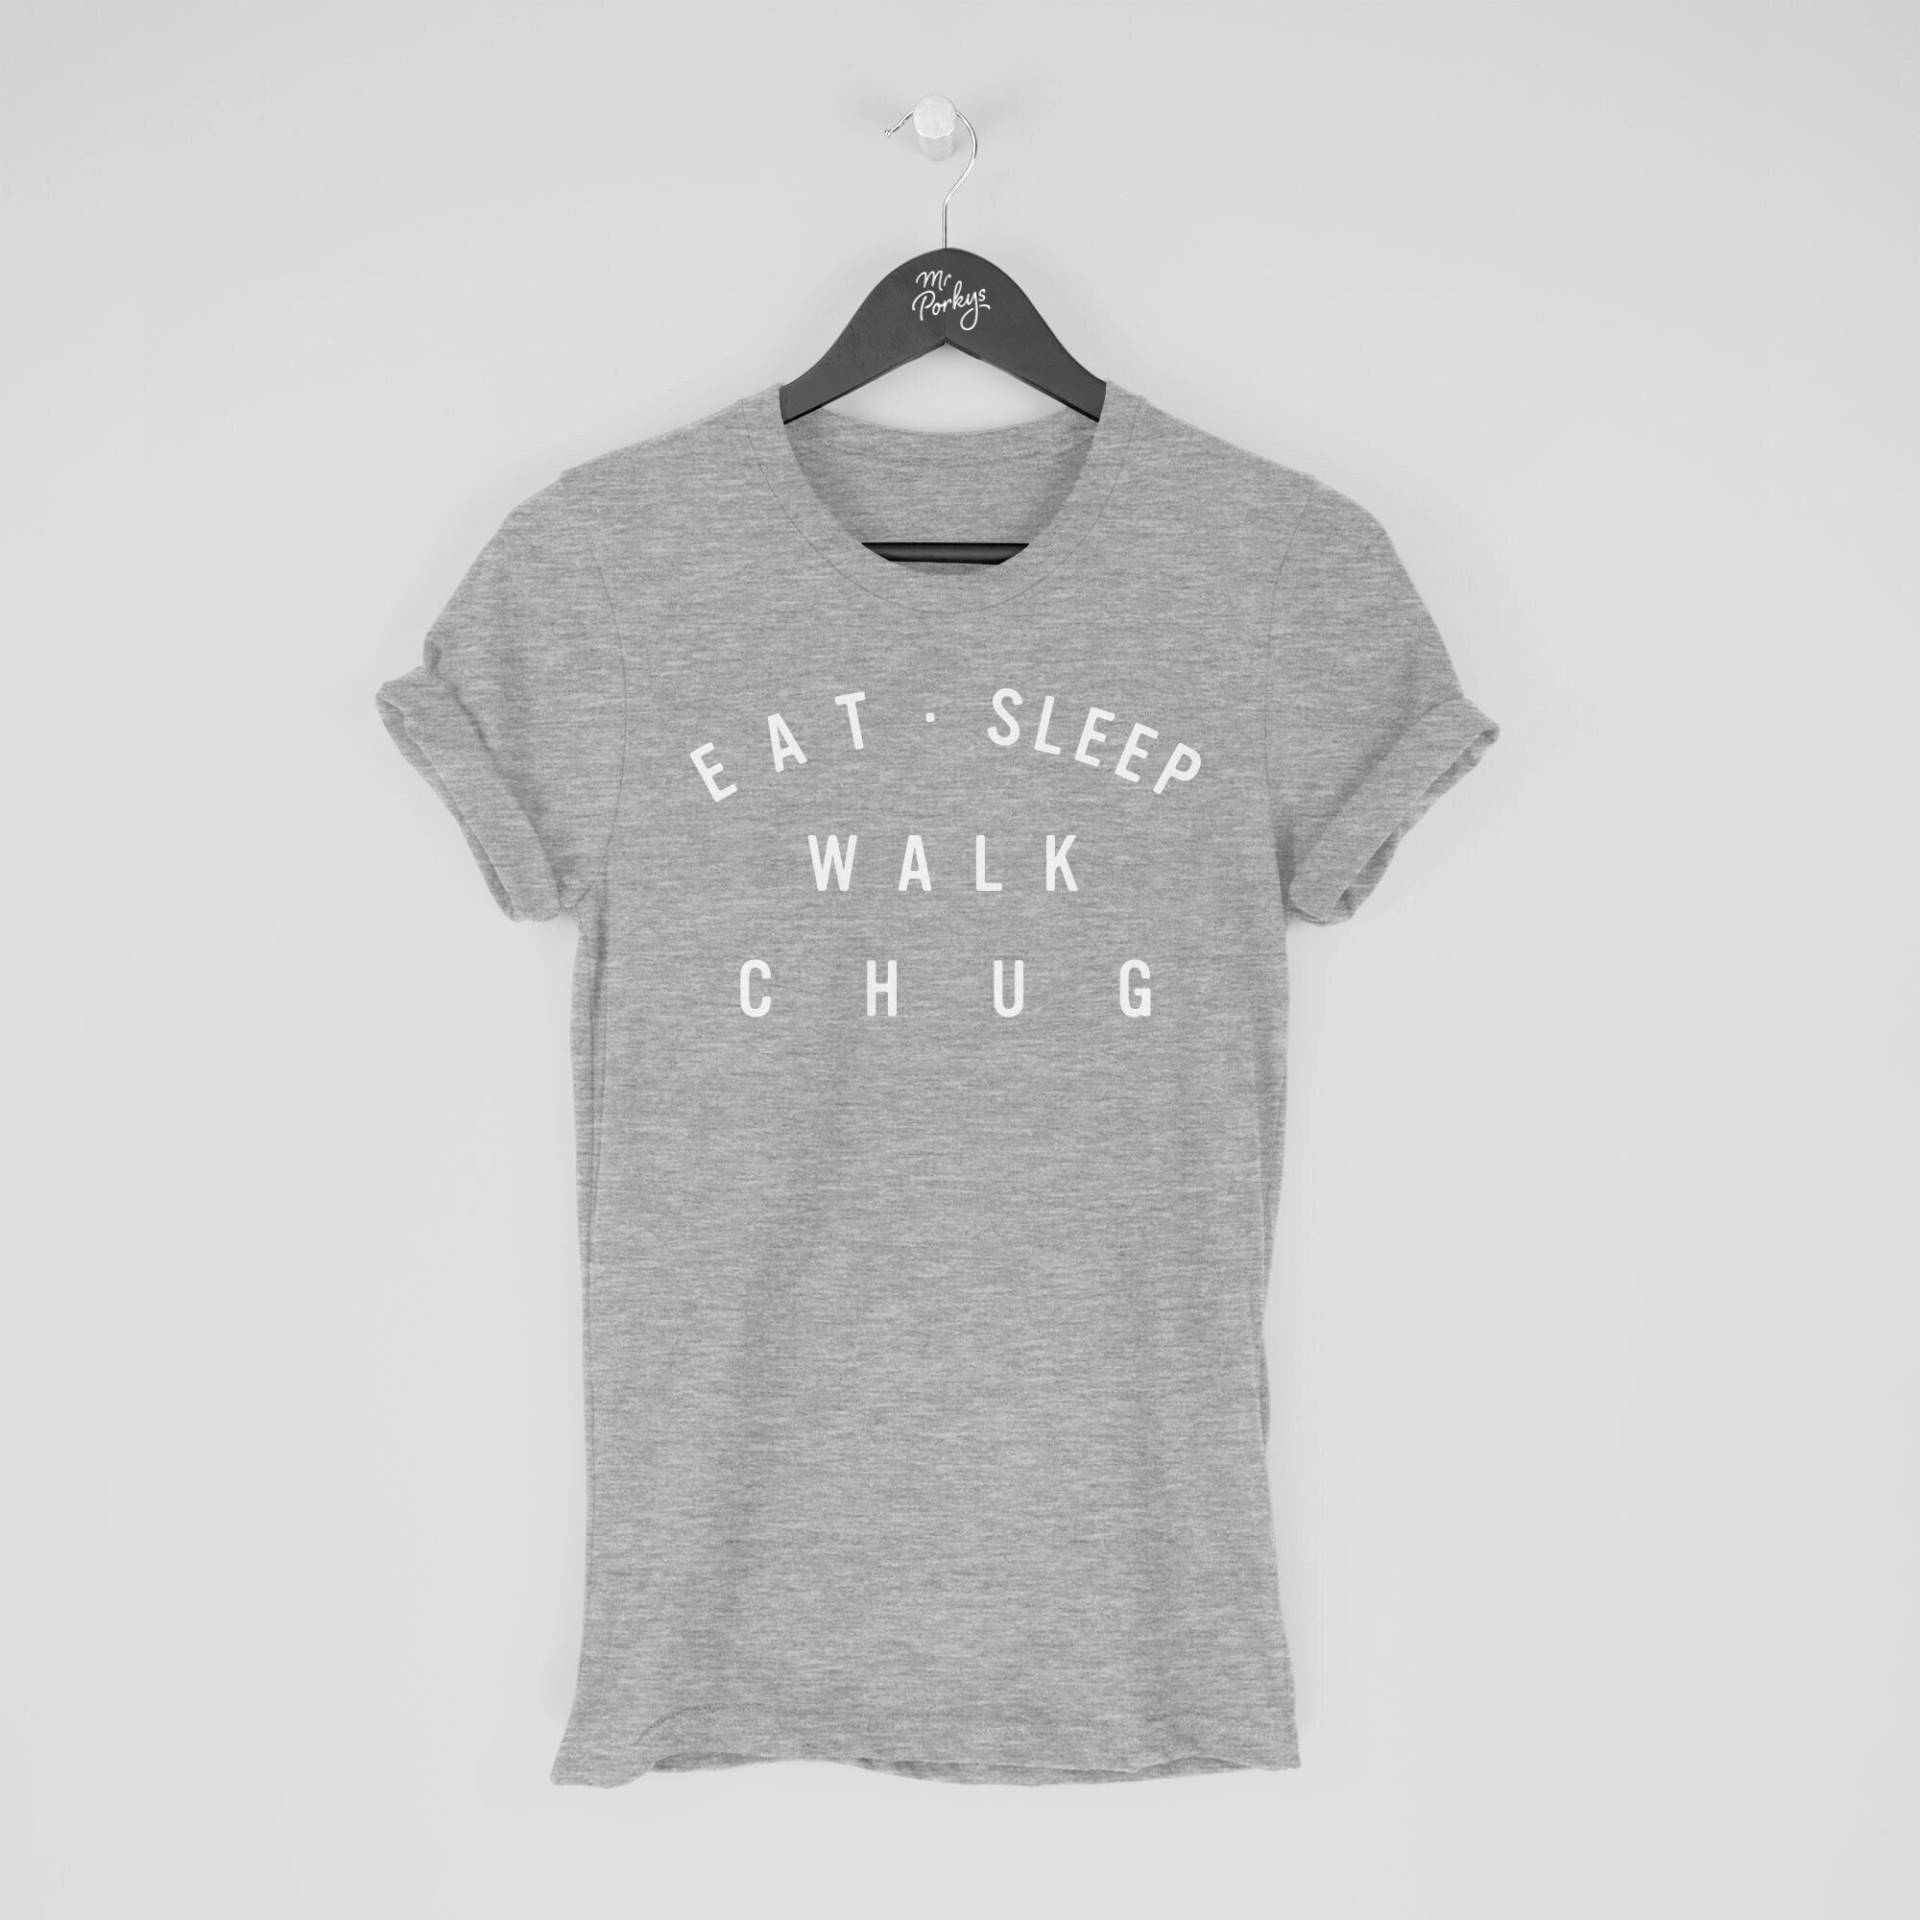 Chug Shirt, Eat Sleep Walk T-Shirt, Geschenk Für Besitzer, Tshirt von MrPorkysGiftShop